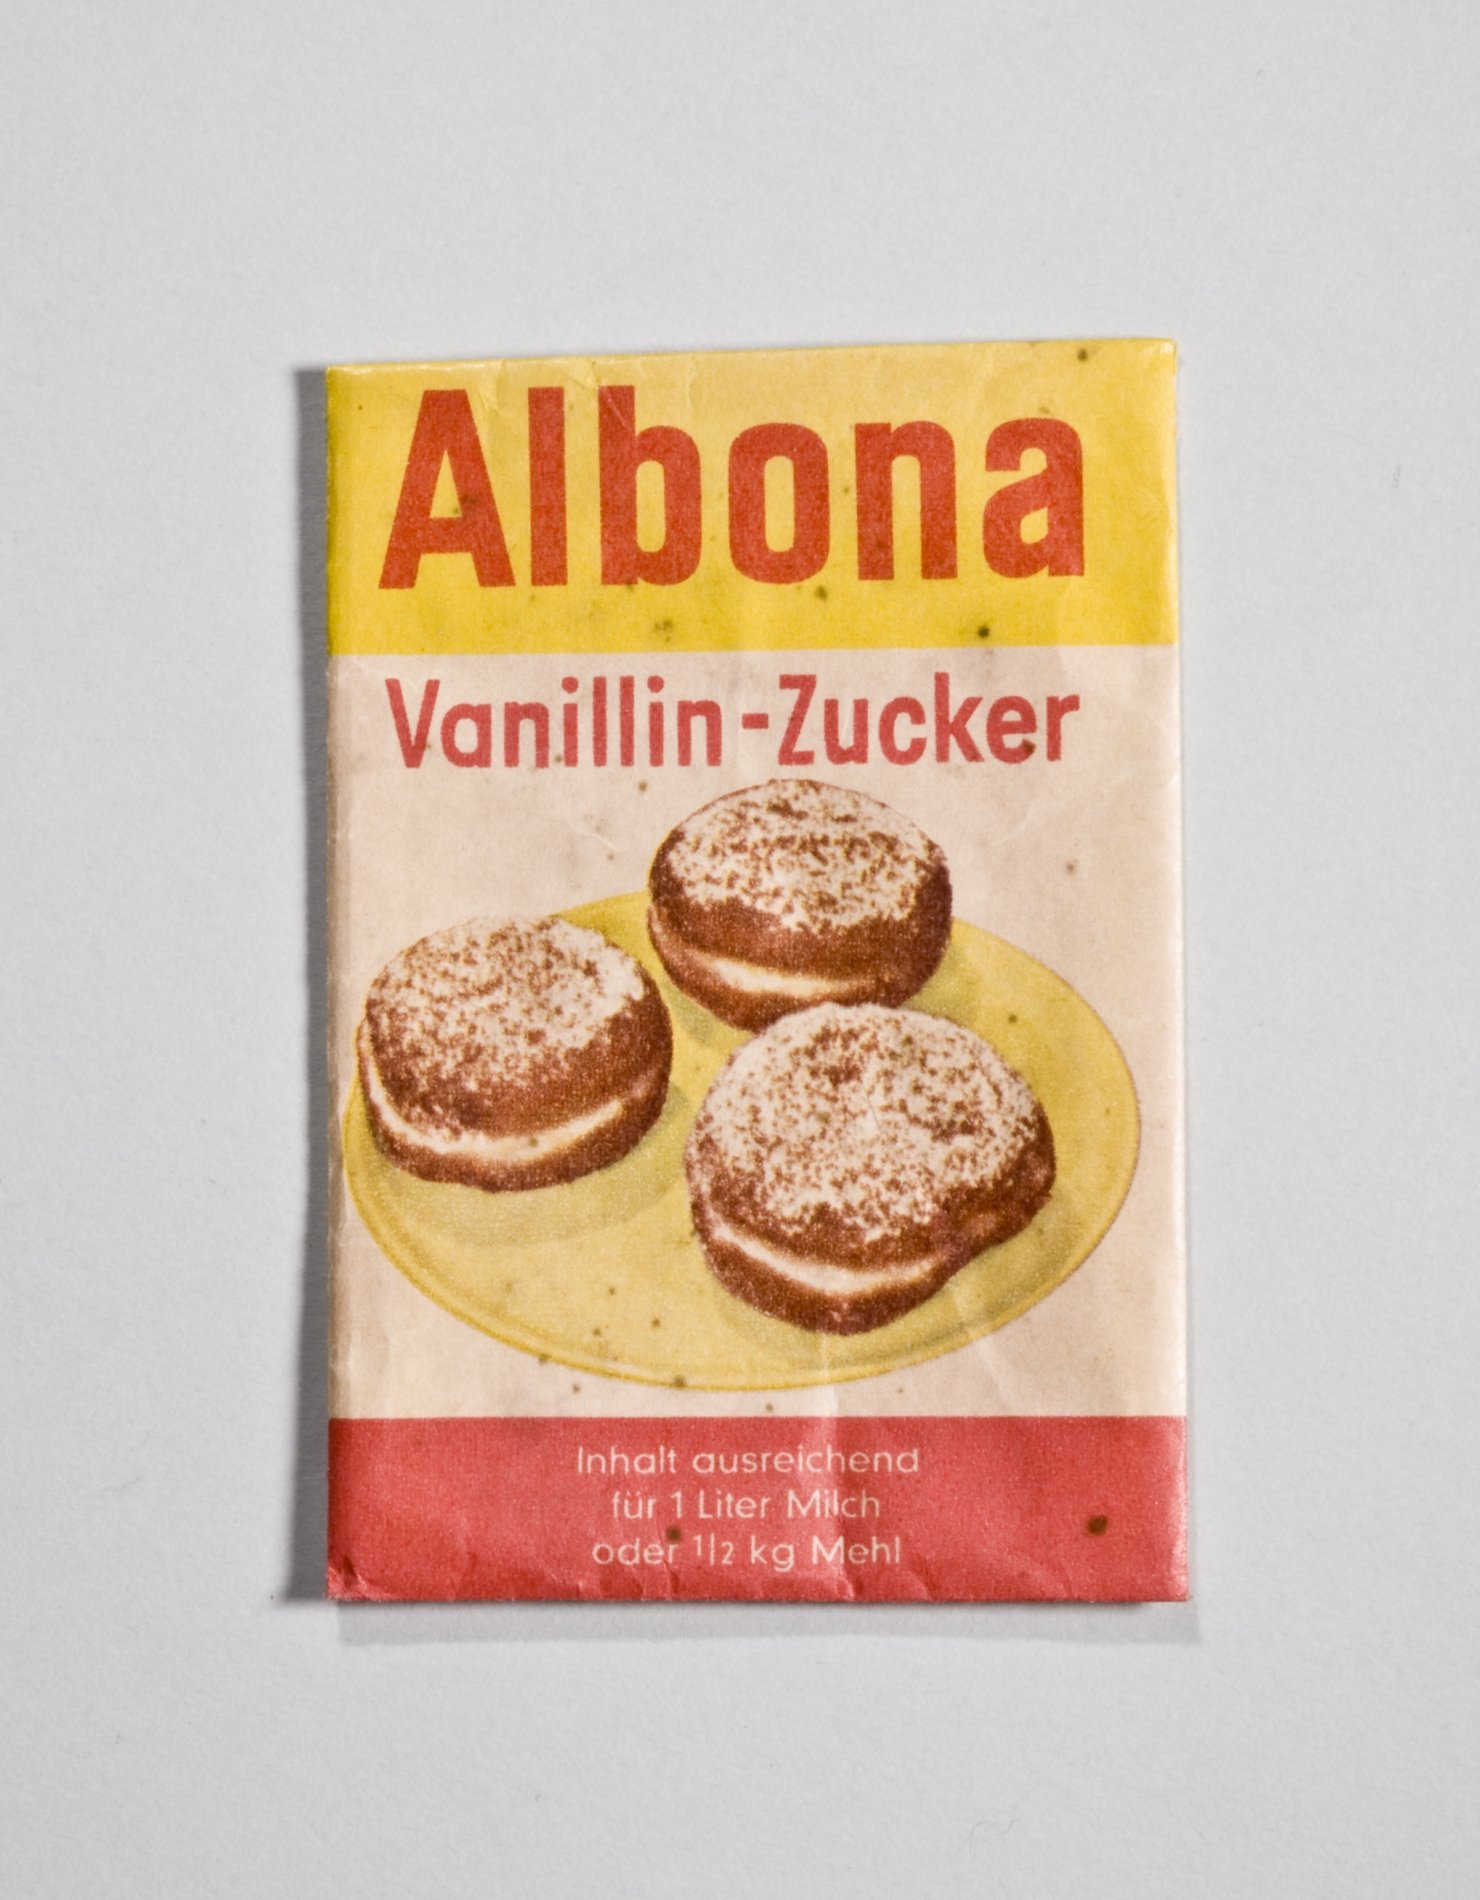 Päckchen "Vanillin-Zucker" von "Albona" (Stiftung Domäne Dahlem - Landgut und Museum, Weiternutzung nur mit Genehmigung des Museums CC BY-NC-SA)